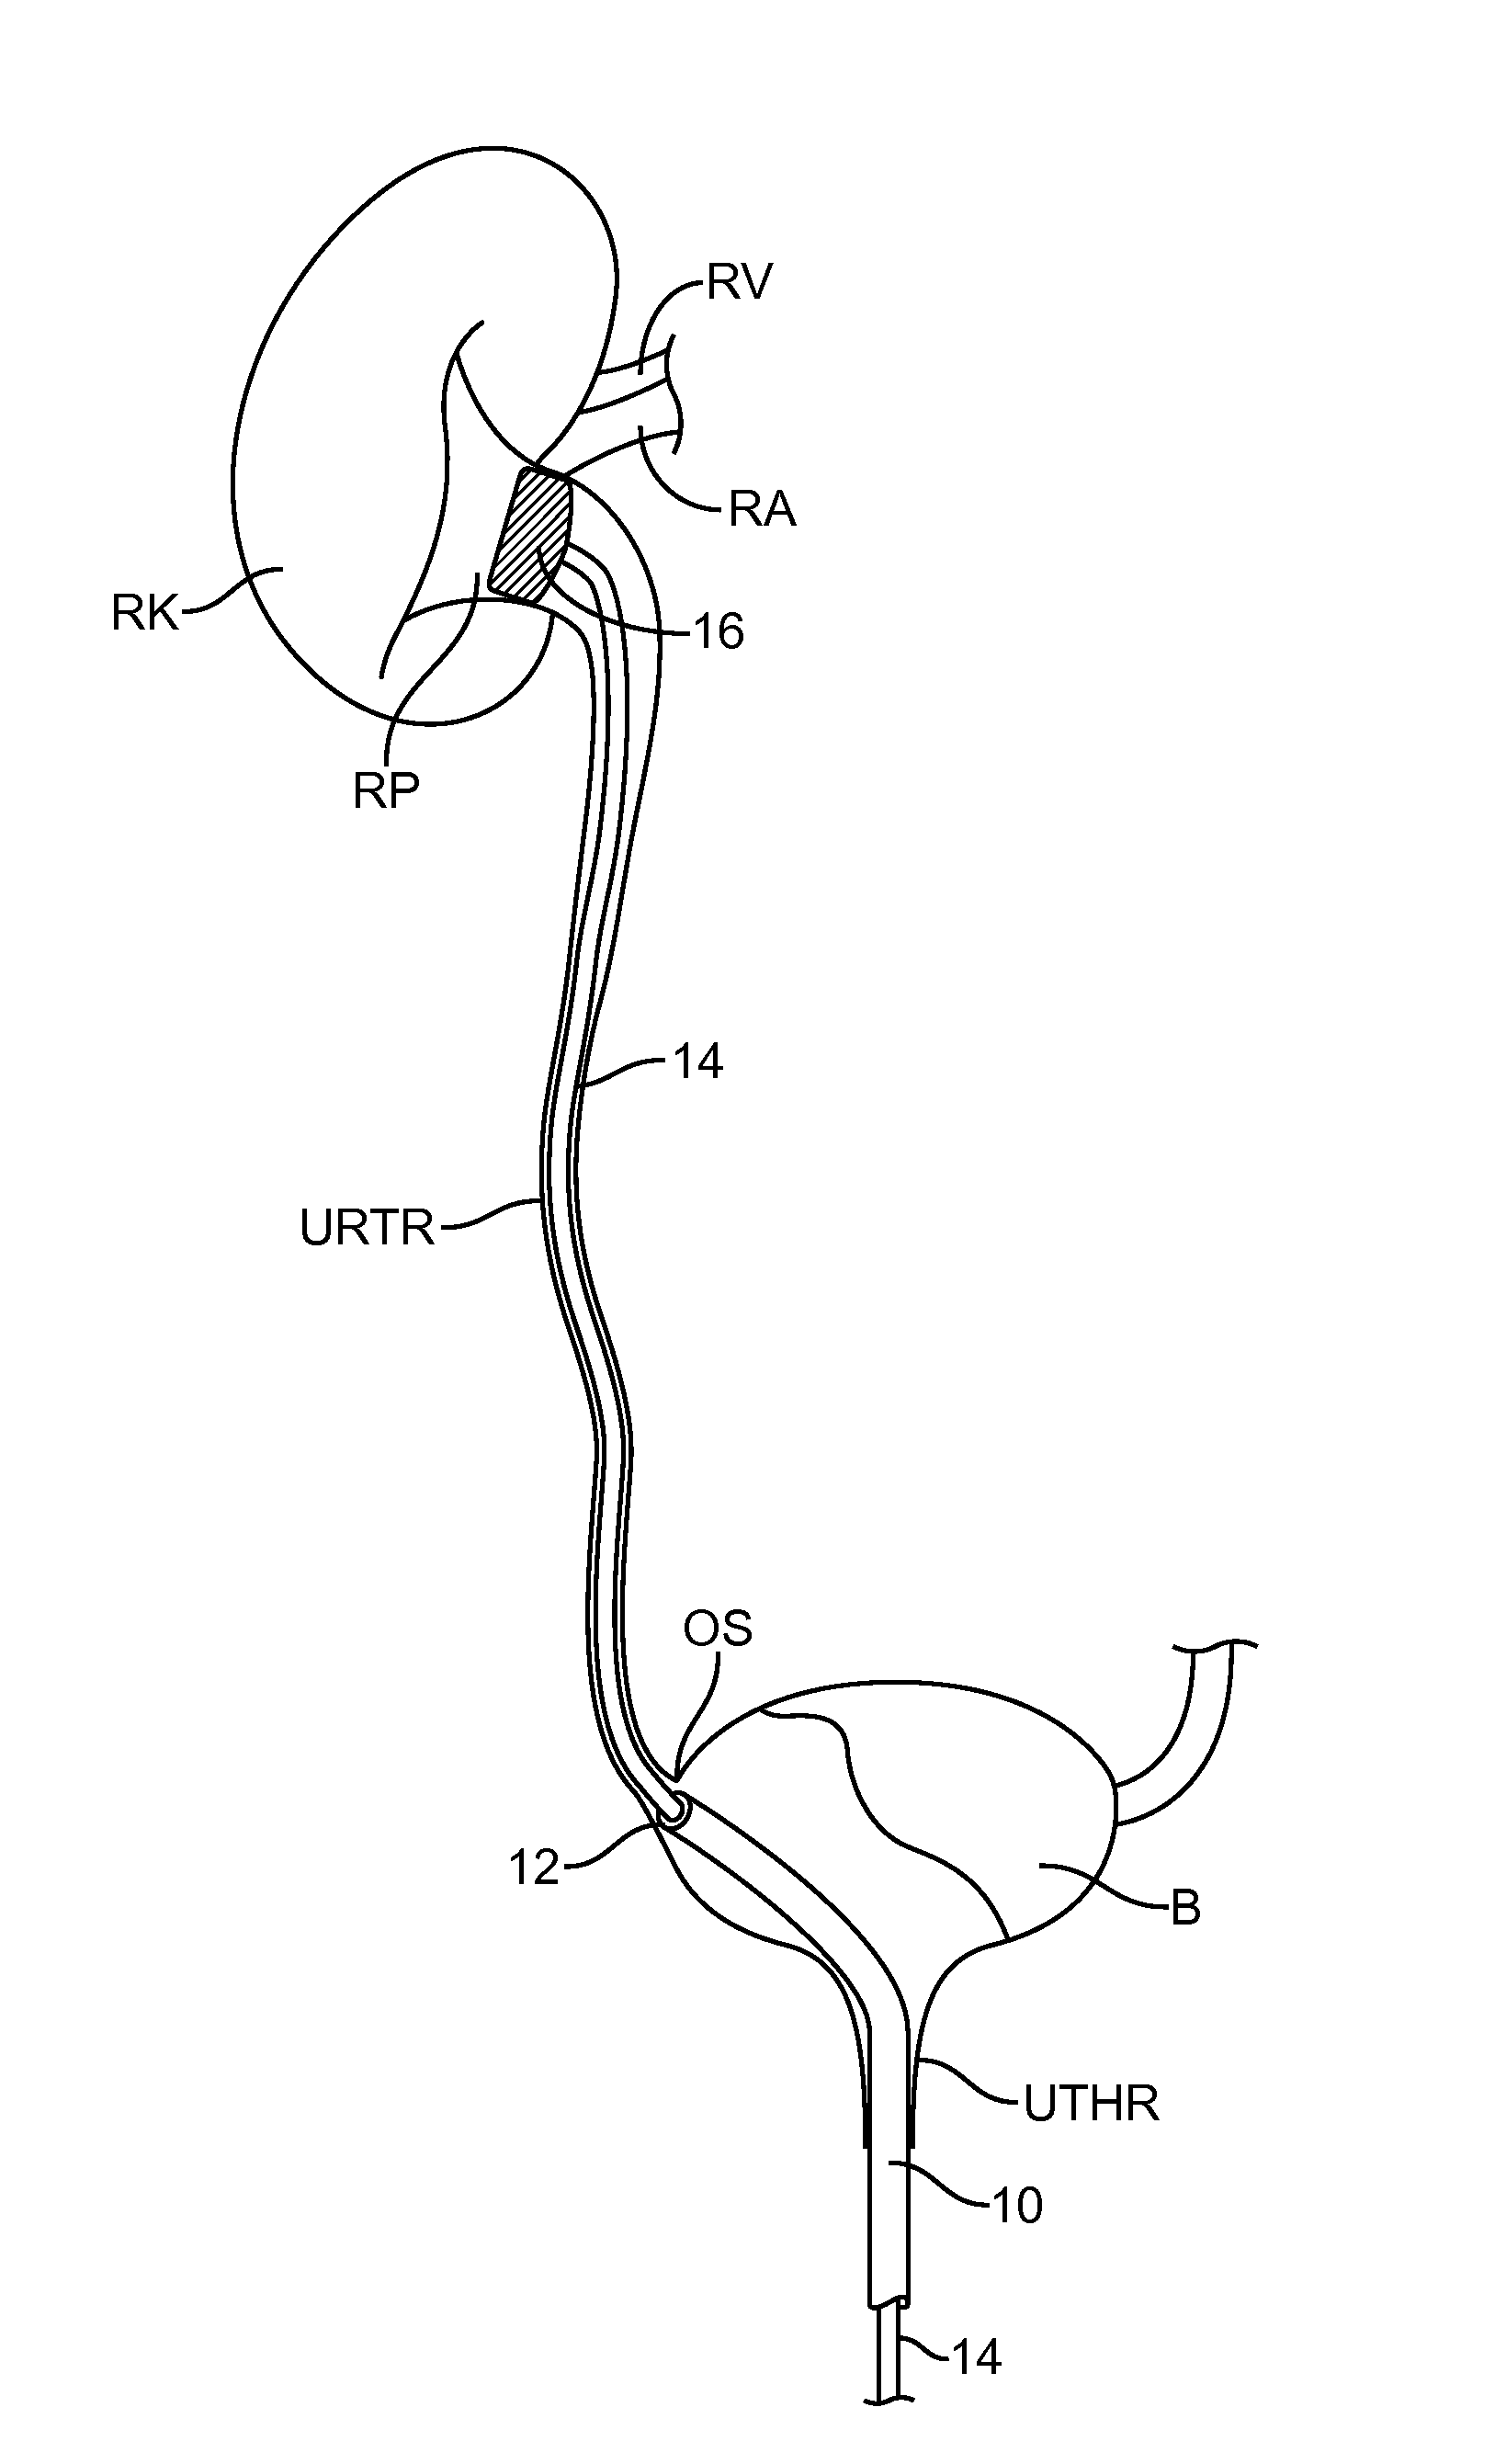 Renal nerve denervation via the renal pelvis